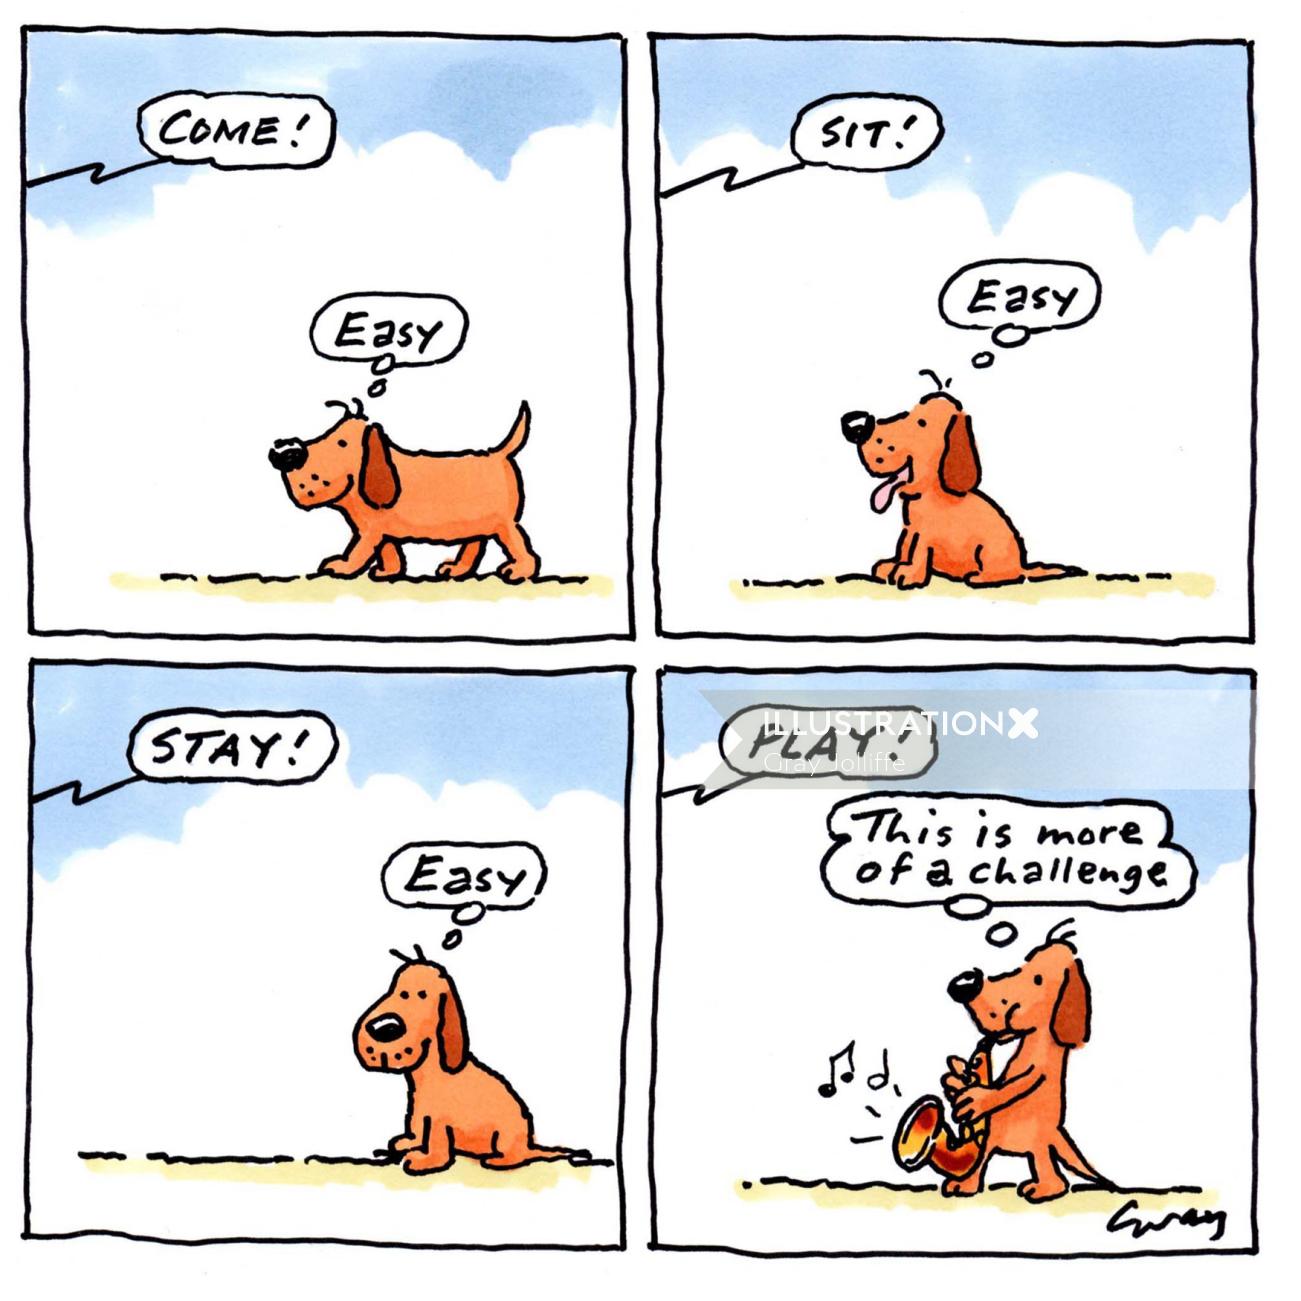 グレイ・ジョリフによる犬との対話の漫画イラスト